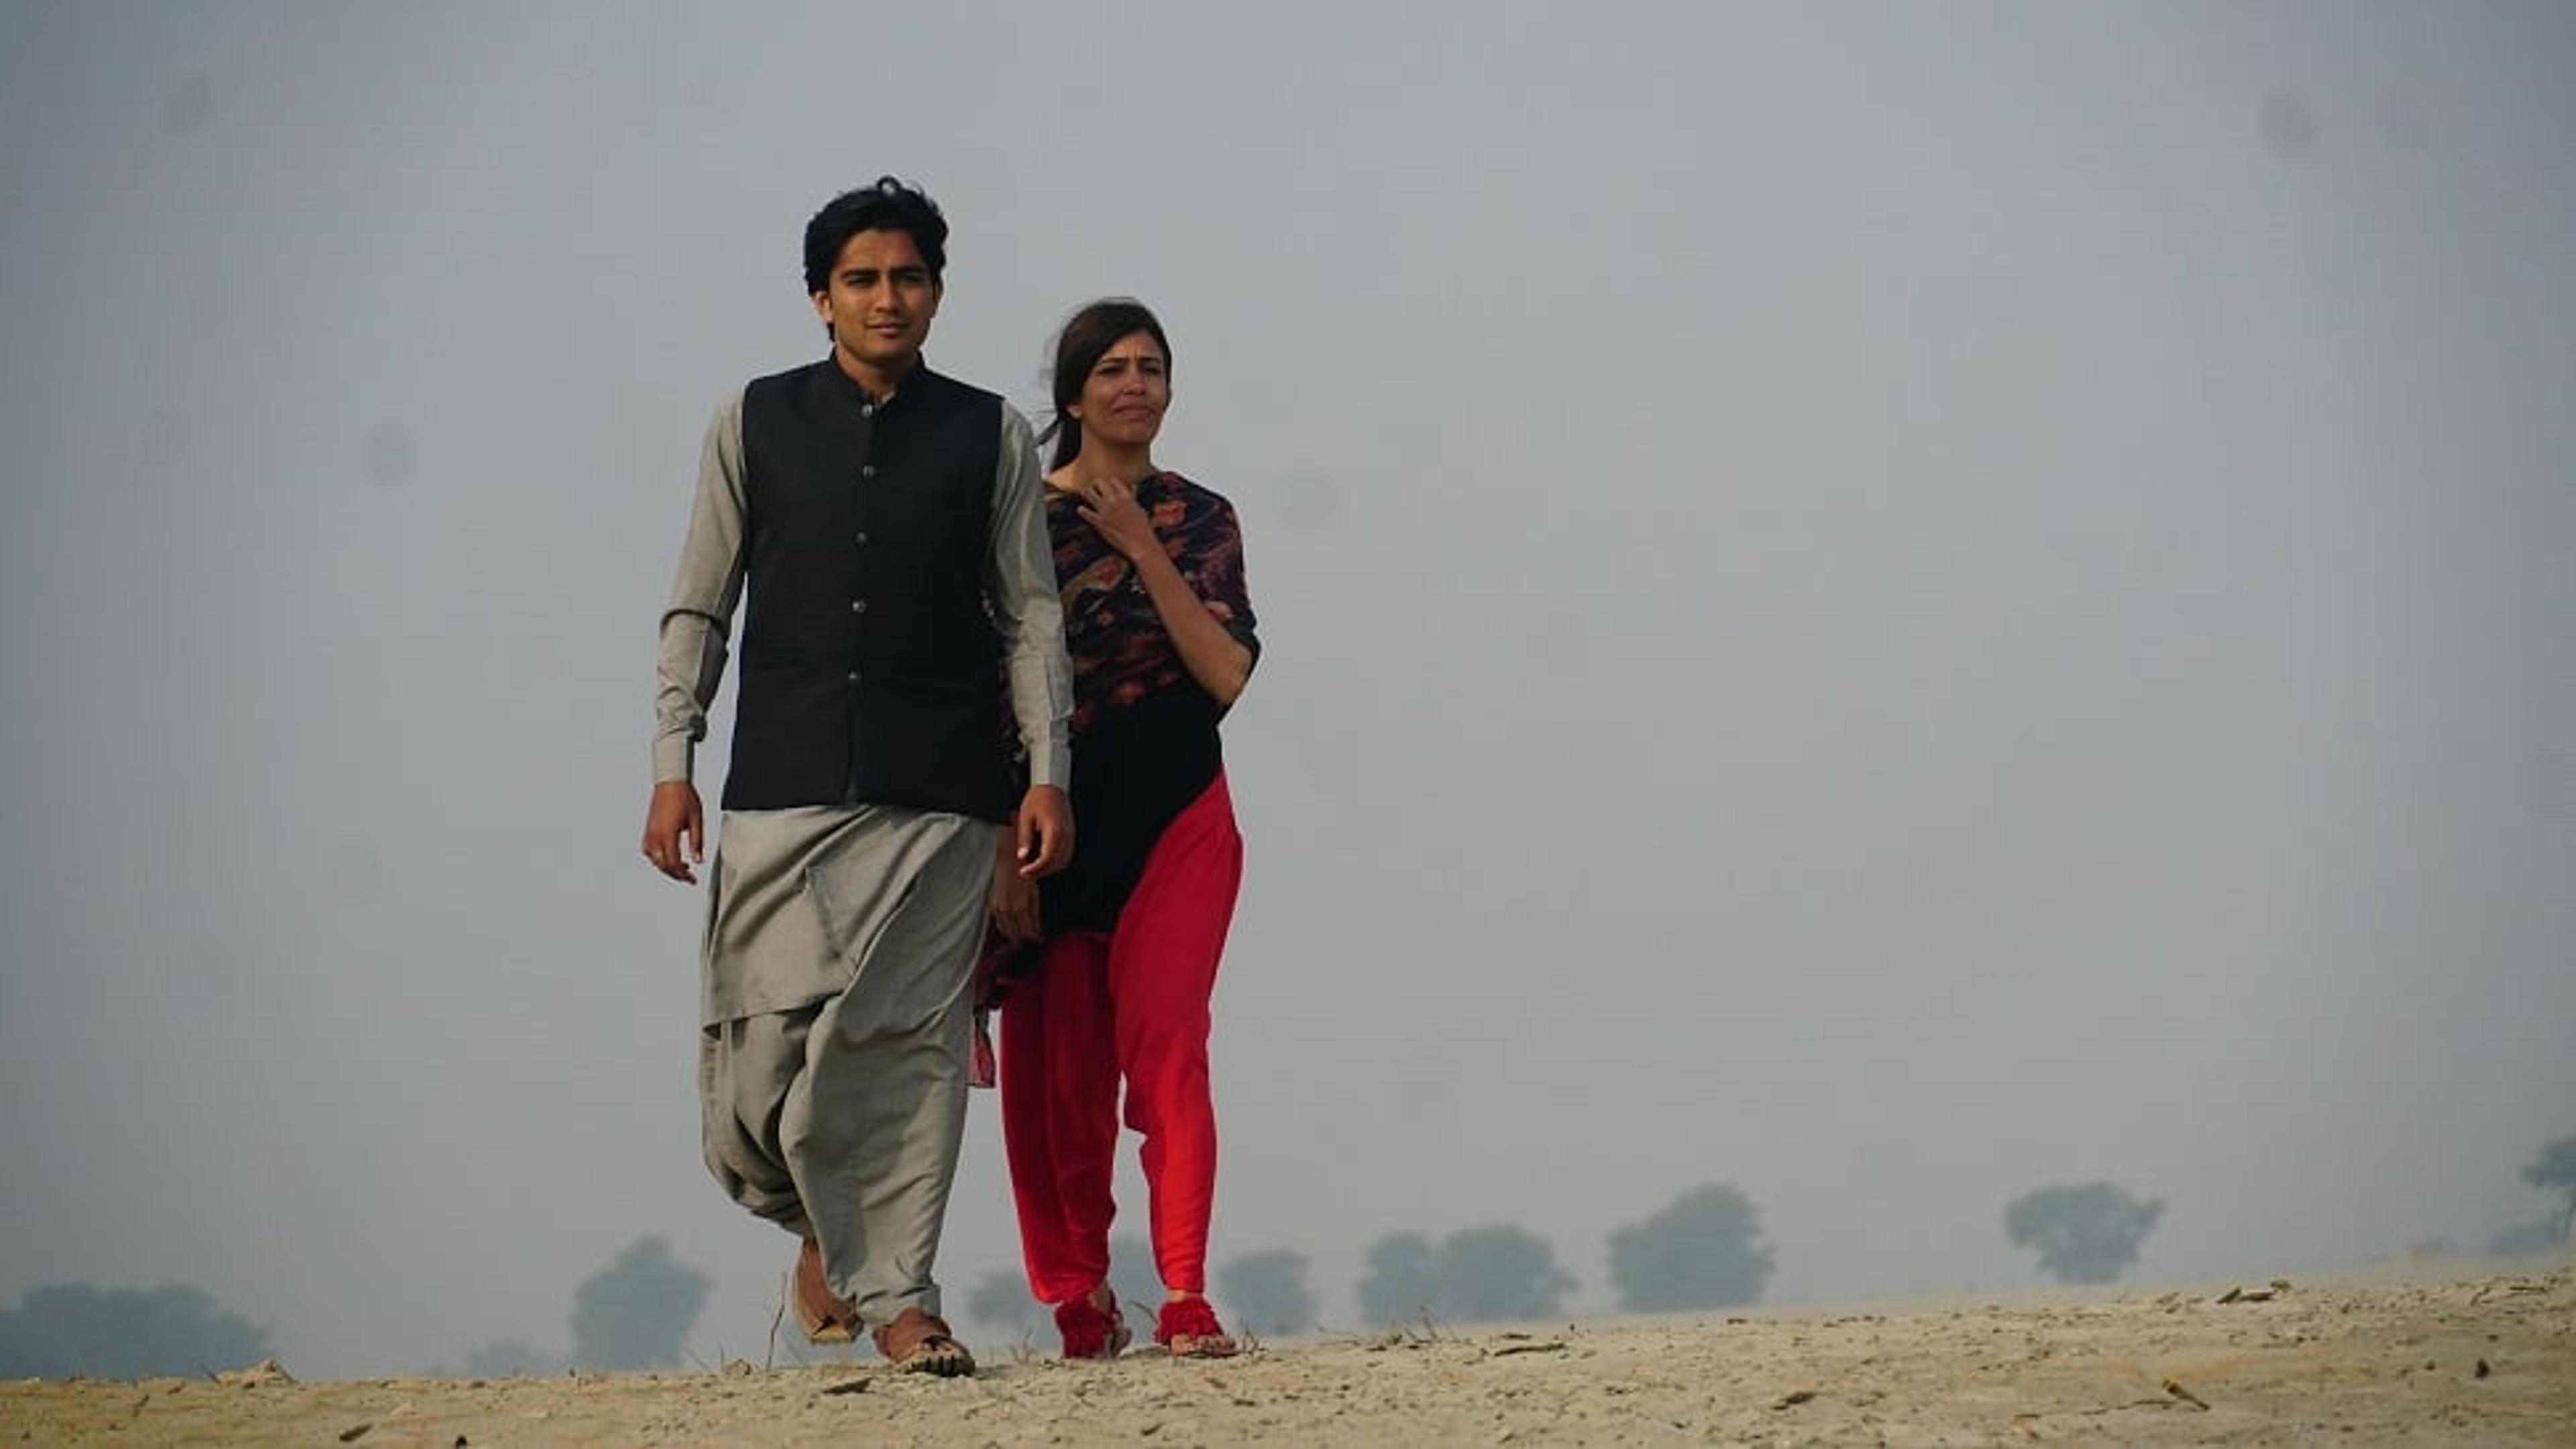 26 साल बाद बनी सिंधी फिल्म, सिंधु नदी को दिखाया जाएगा ‘मां’ के रूप में